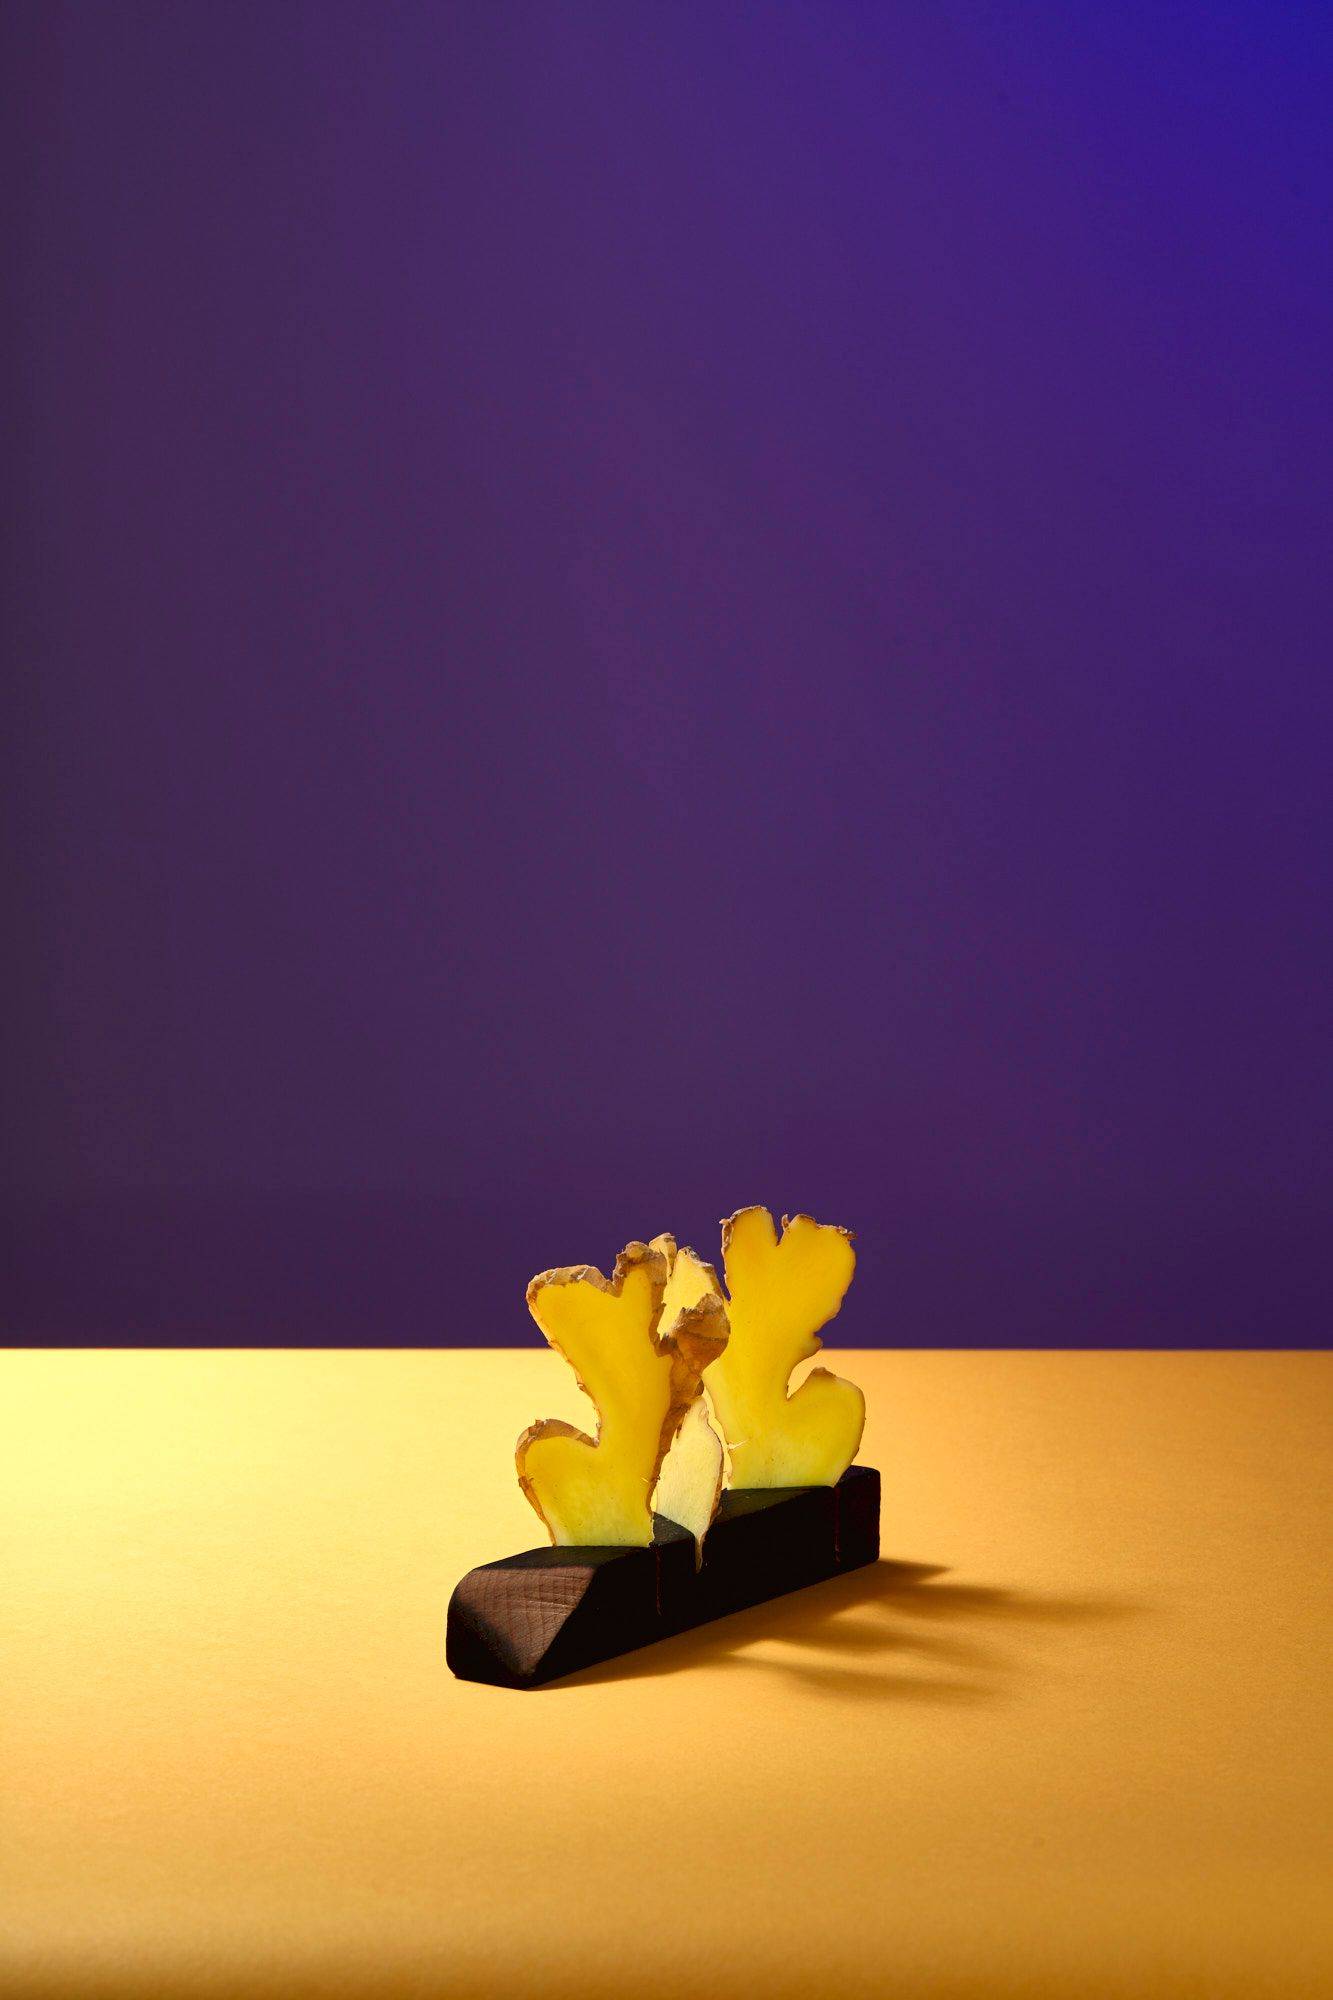 drei scheiben ingwer in einem holzständer mit gelbem und lila hintergrund